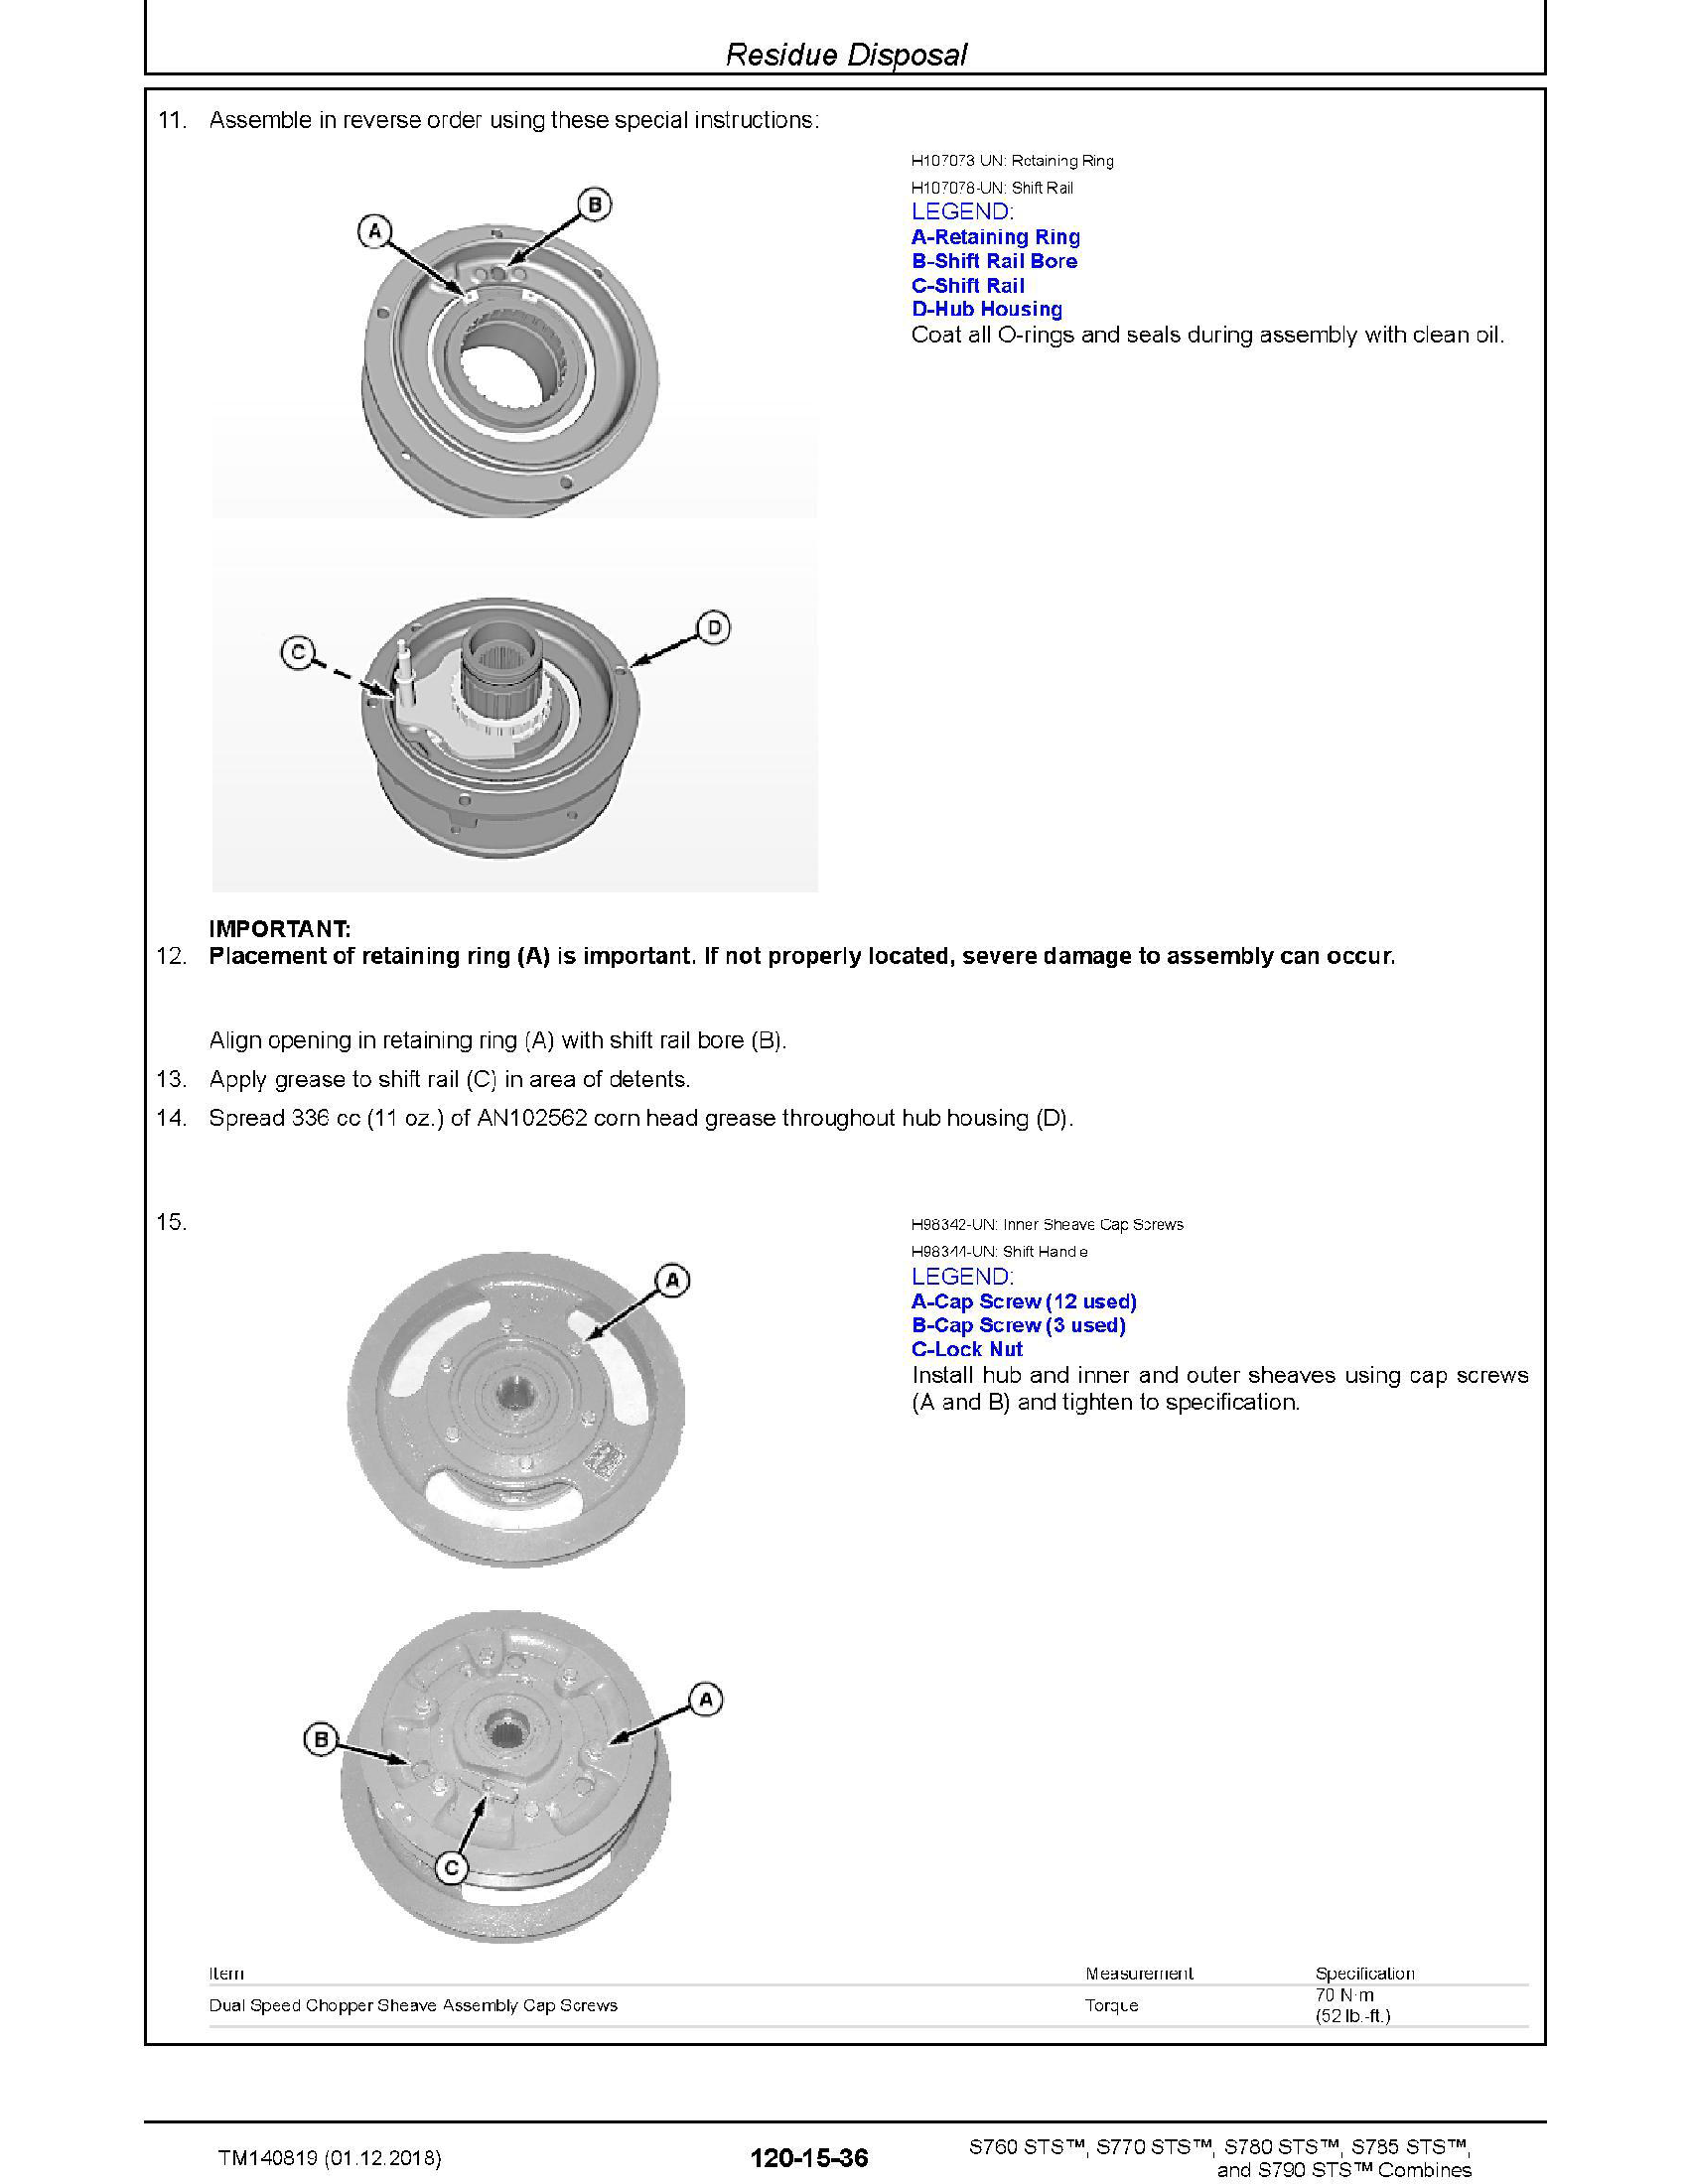 John Deere 6135R manual pdf